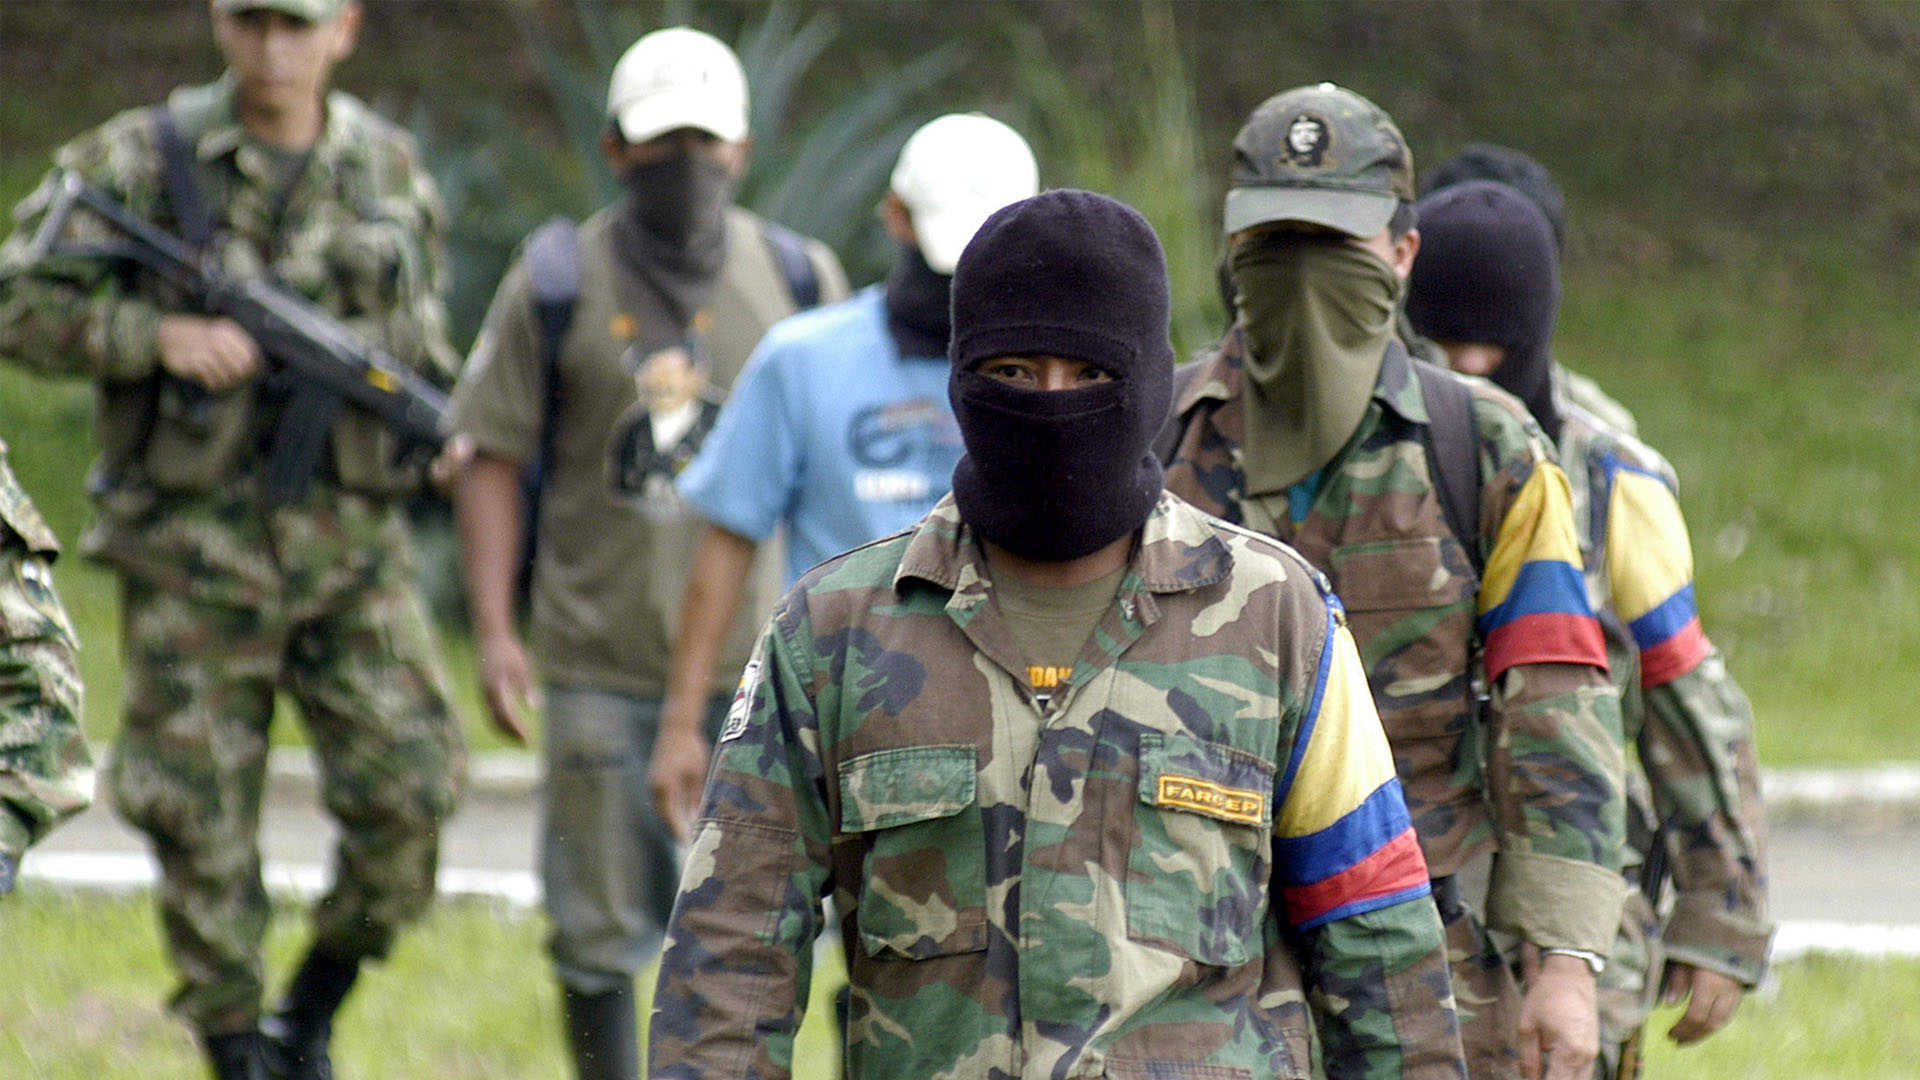 Sospechas apuntan a que un grupo guerrillero perteneciente a las FARC podría declararse en contra del proceso de paz